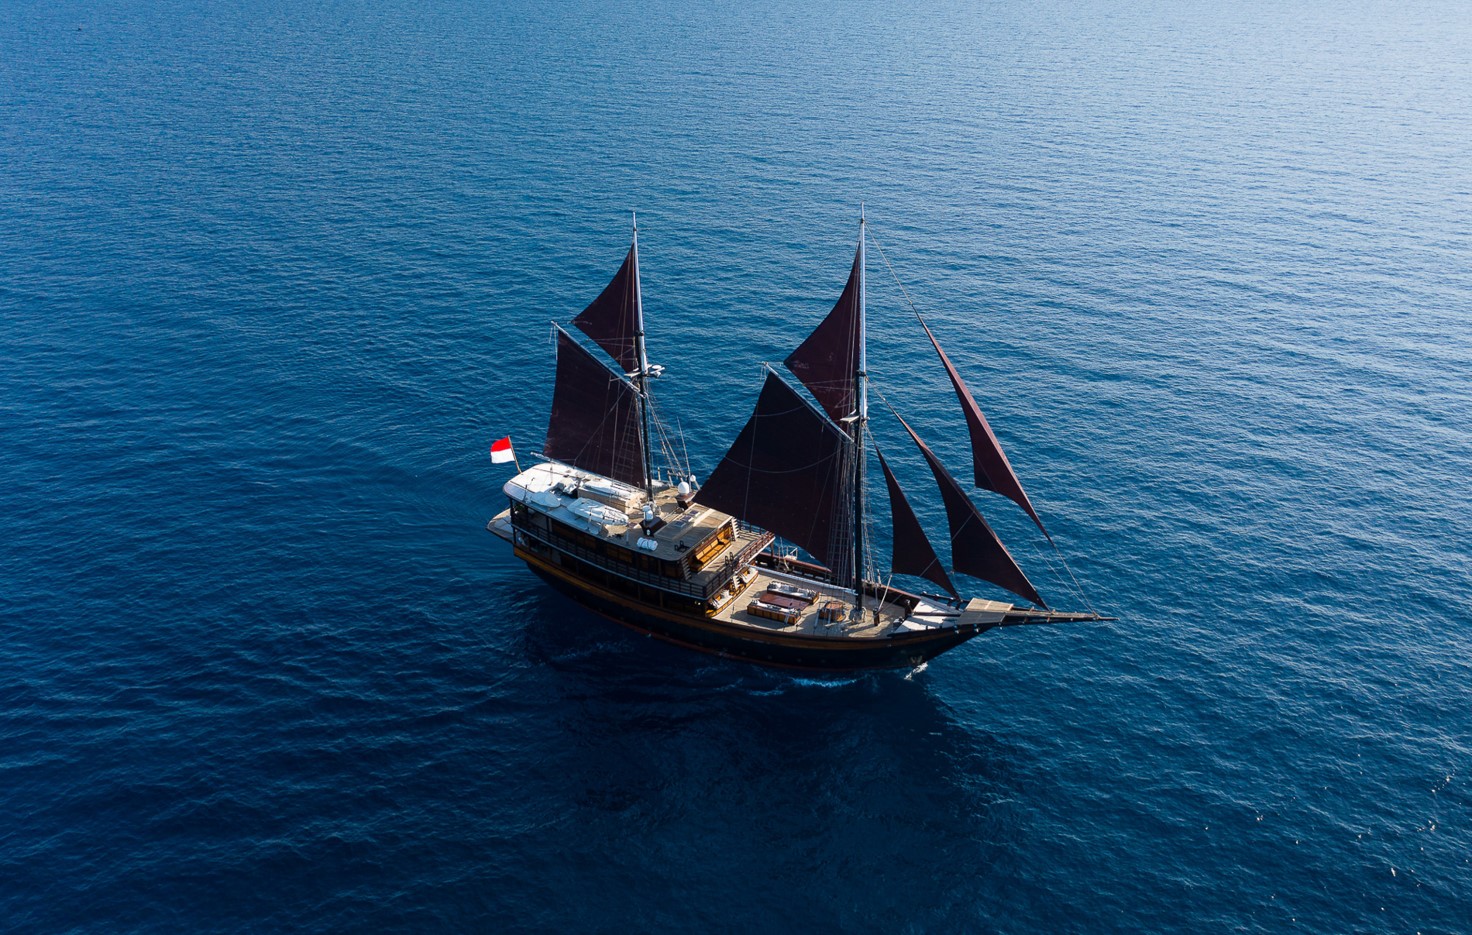 DuniaBaru Luxury Yacht Charter Indonesia